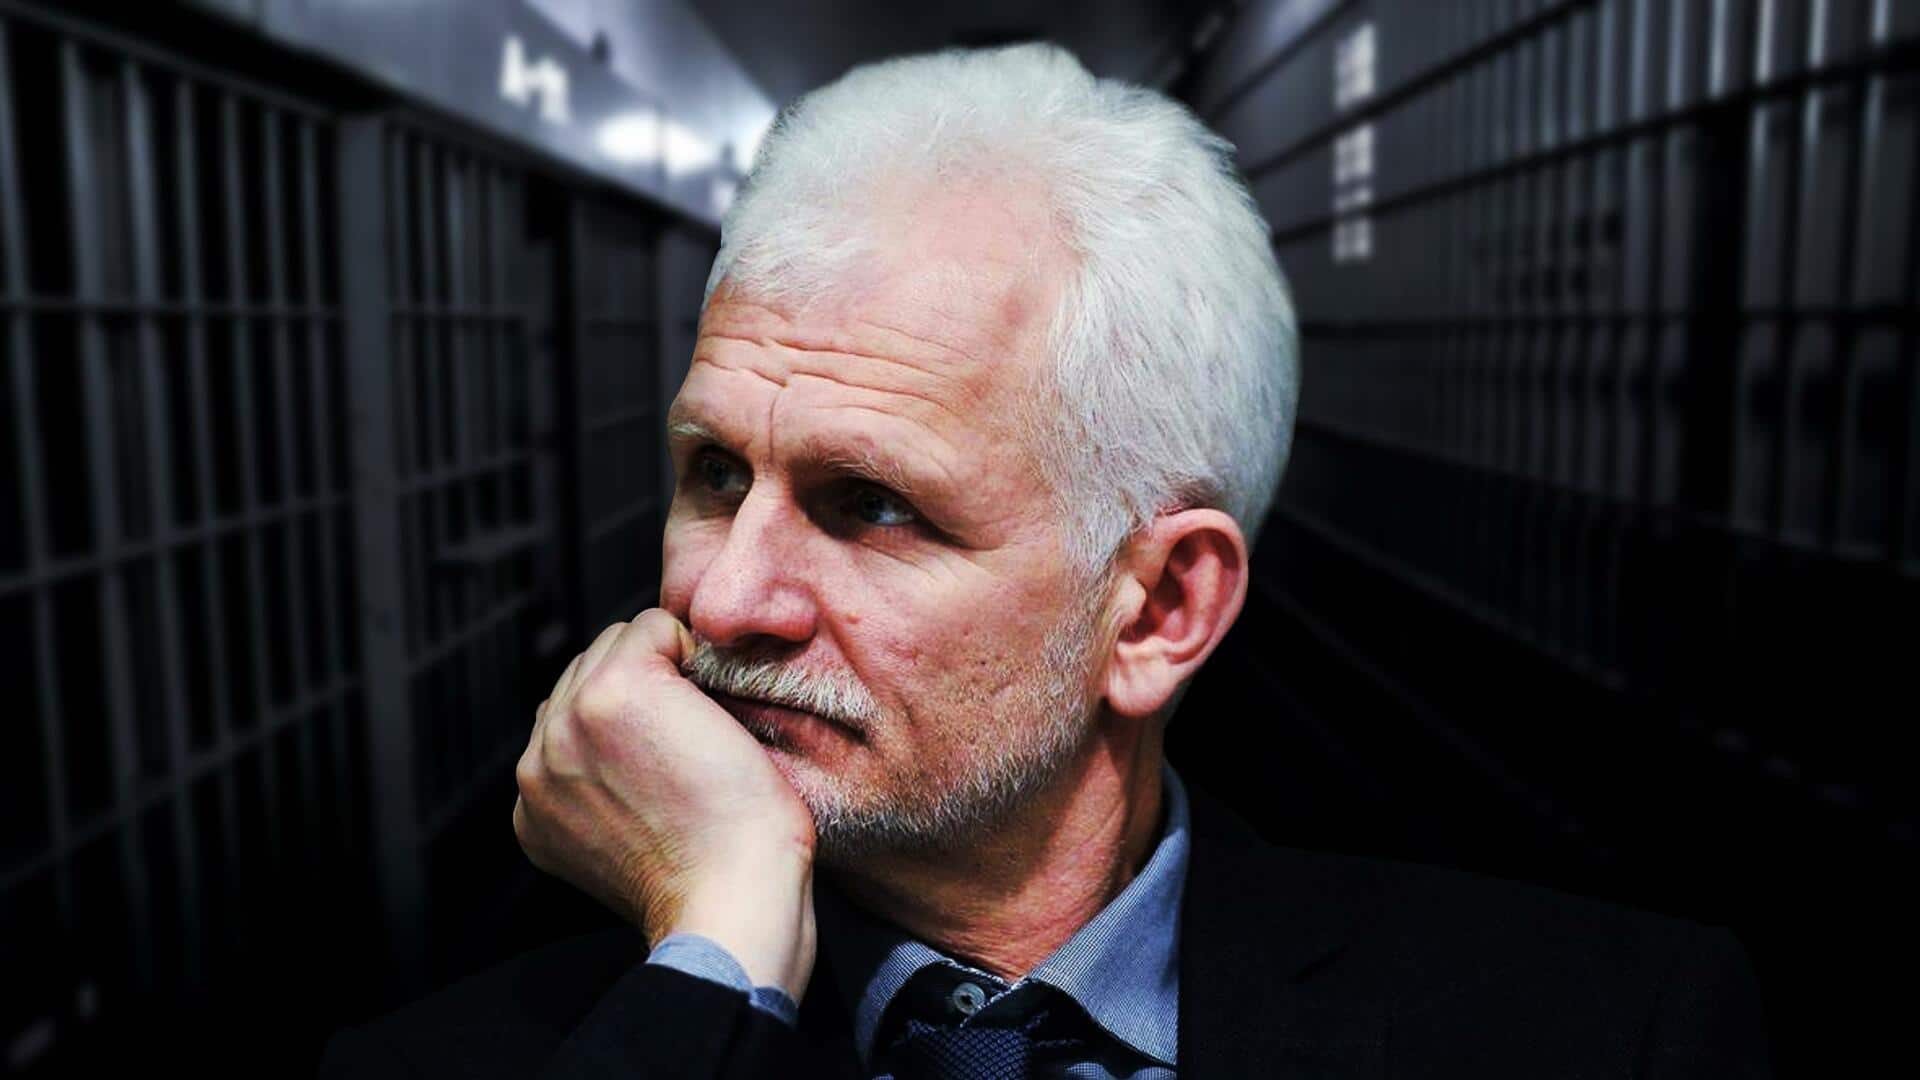 बेलारूस: नोबेल शांति पुरस्कार विजेता एलेस बालियात्स्की को 10 साल जेल की सजा सुनाई गई